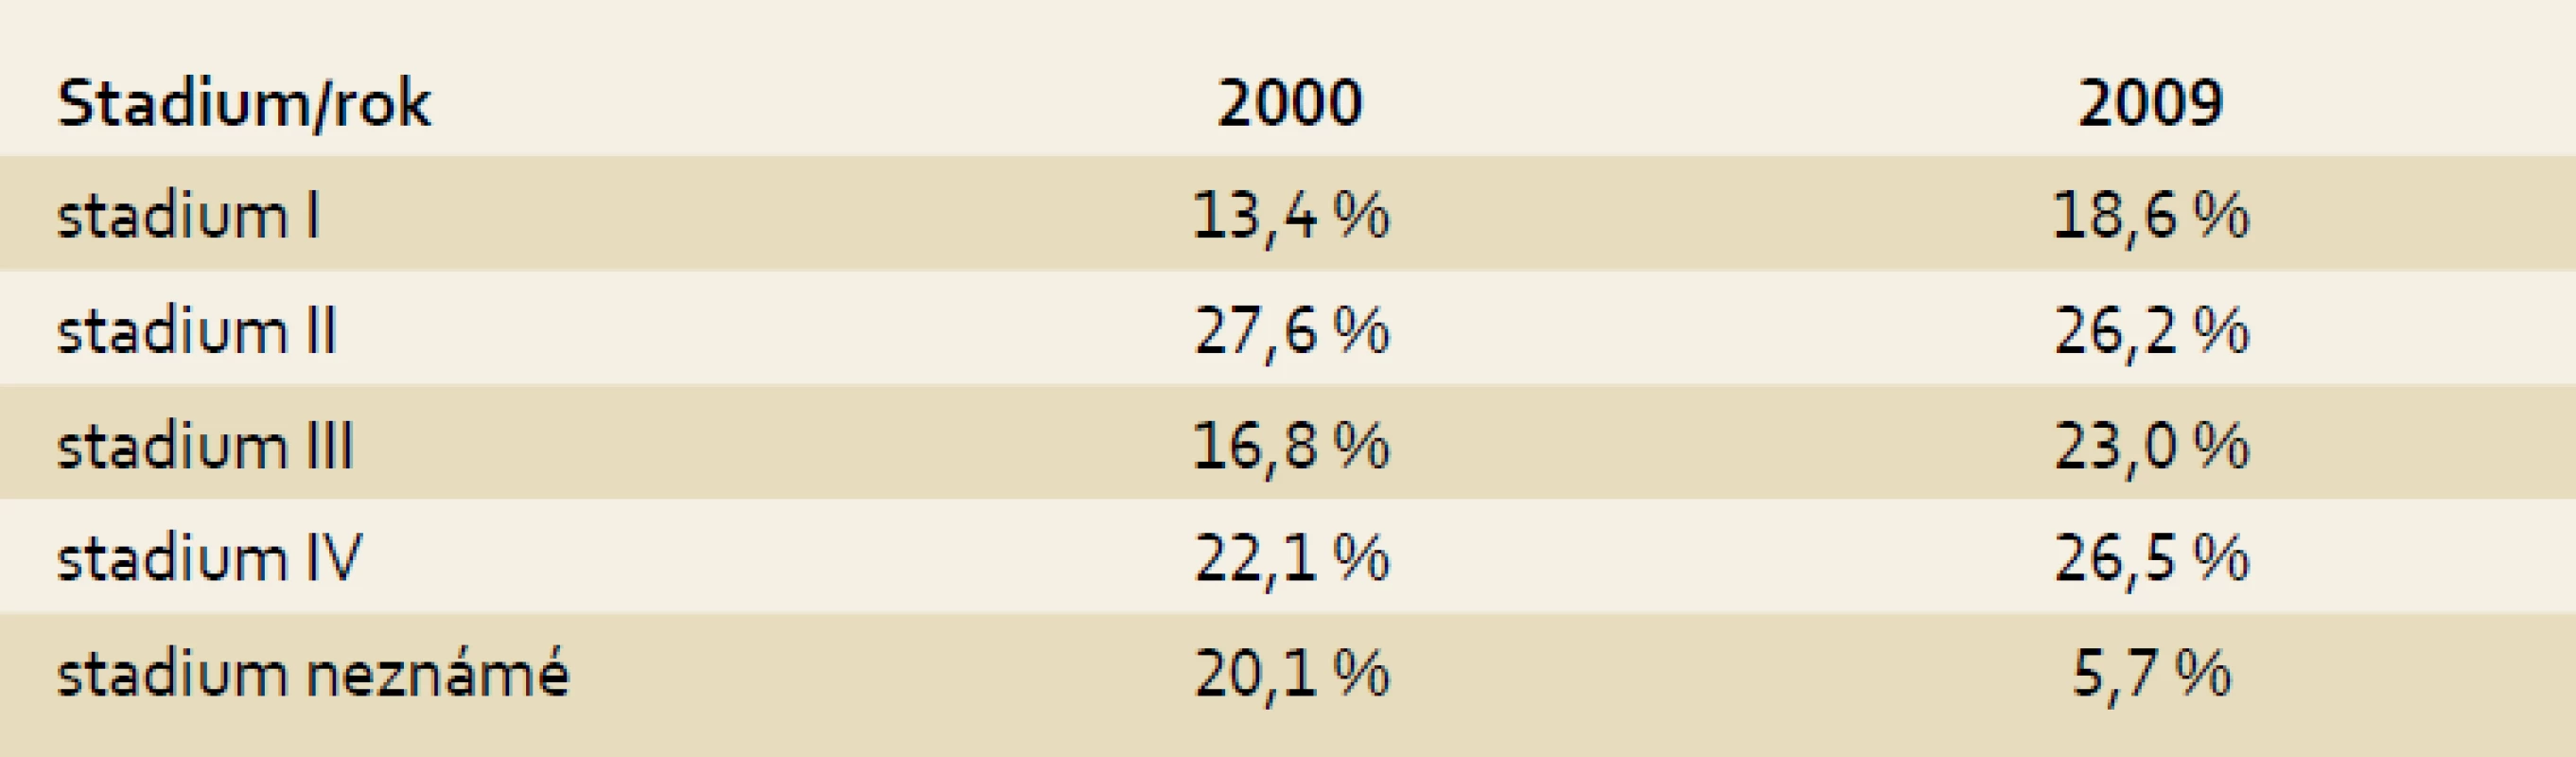 Zastoupení stadií kolorektálního karcinomu v ČR – srovnání let 2000 a 2009.
Tab. 2. Ratio of colorectal cancer stages in the Czech Republic – comparison of years 2000 and 2009.